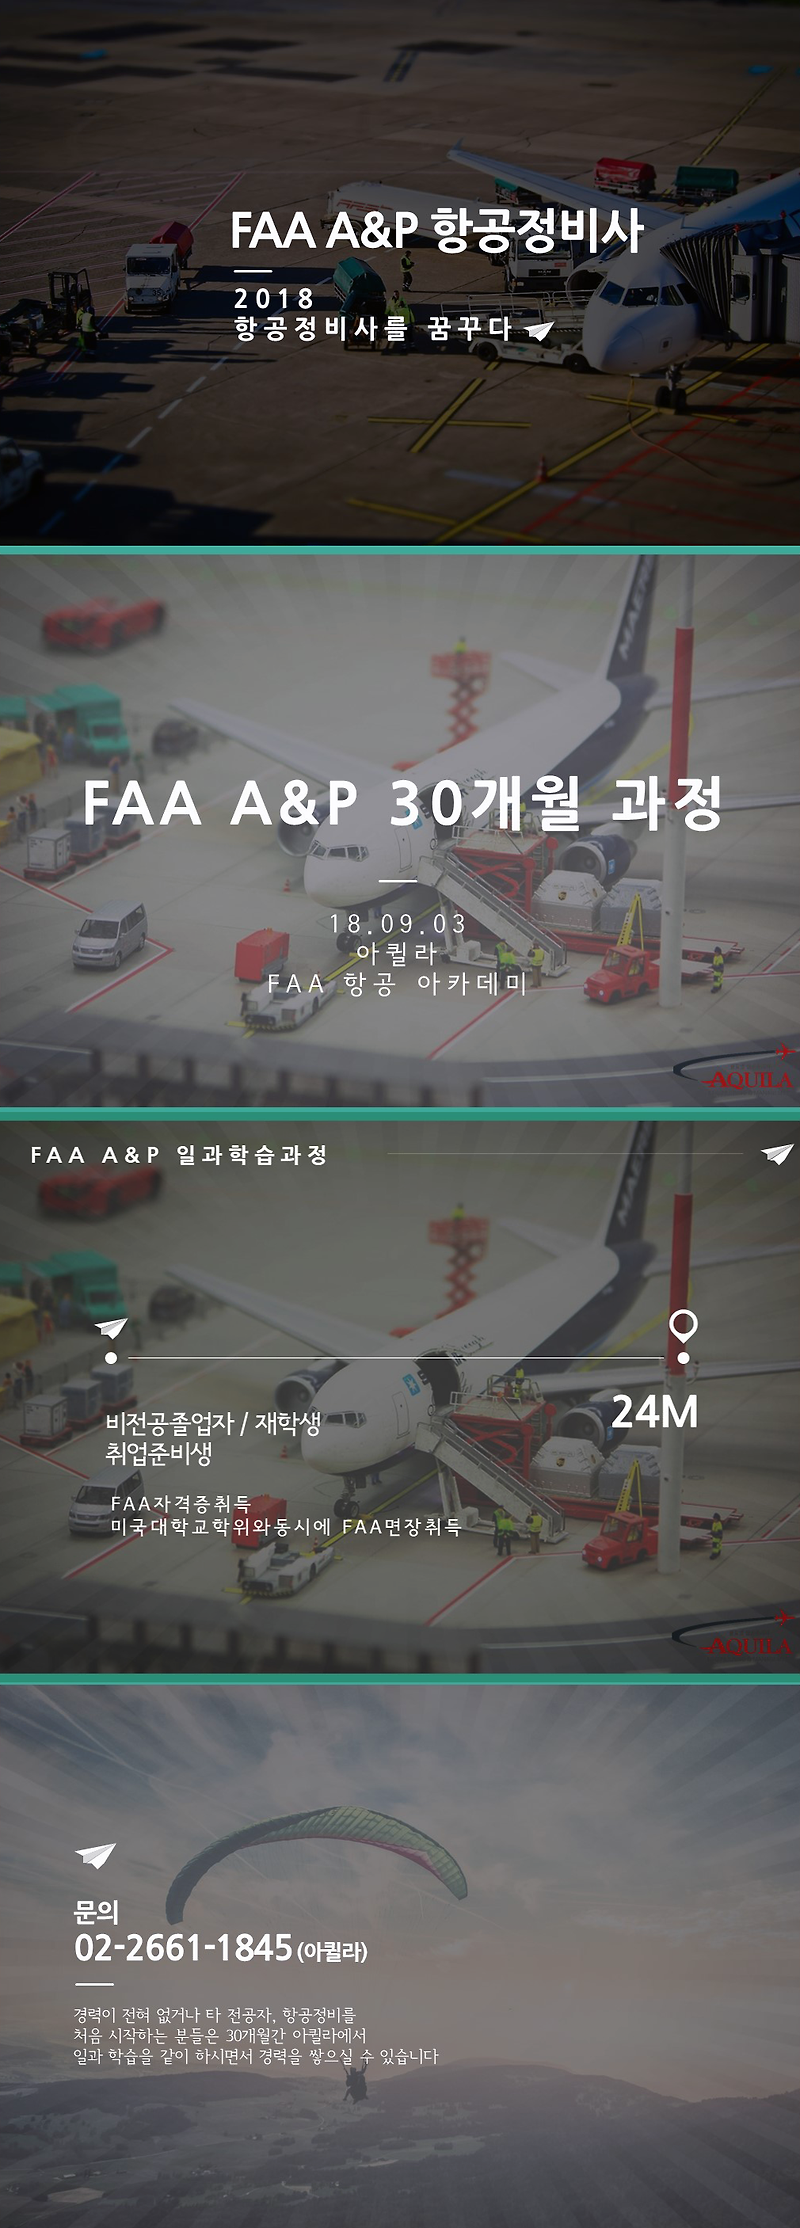 FAA A&P미항공정비사자격증 - 2 !!